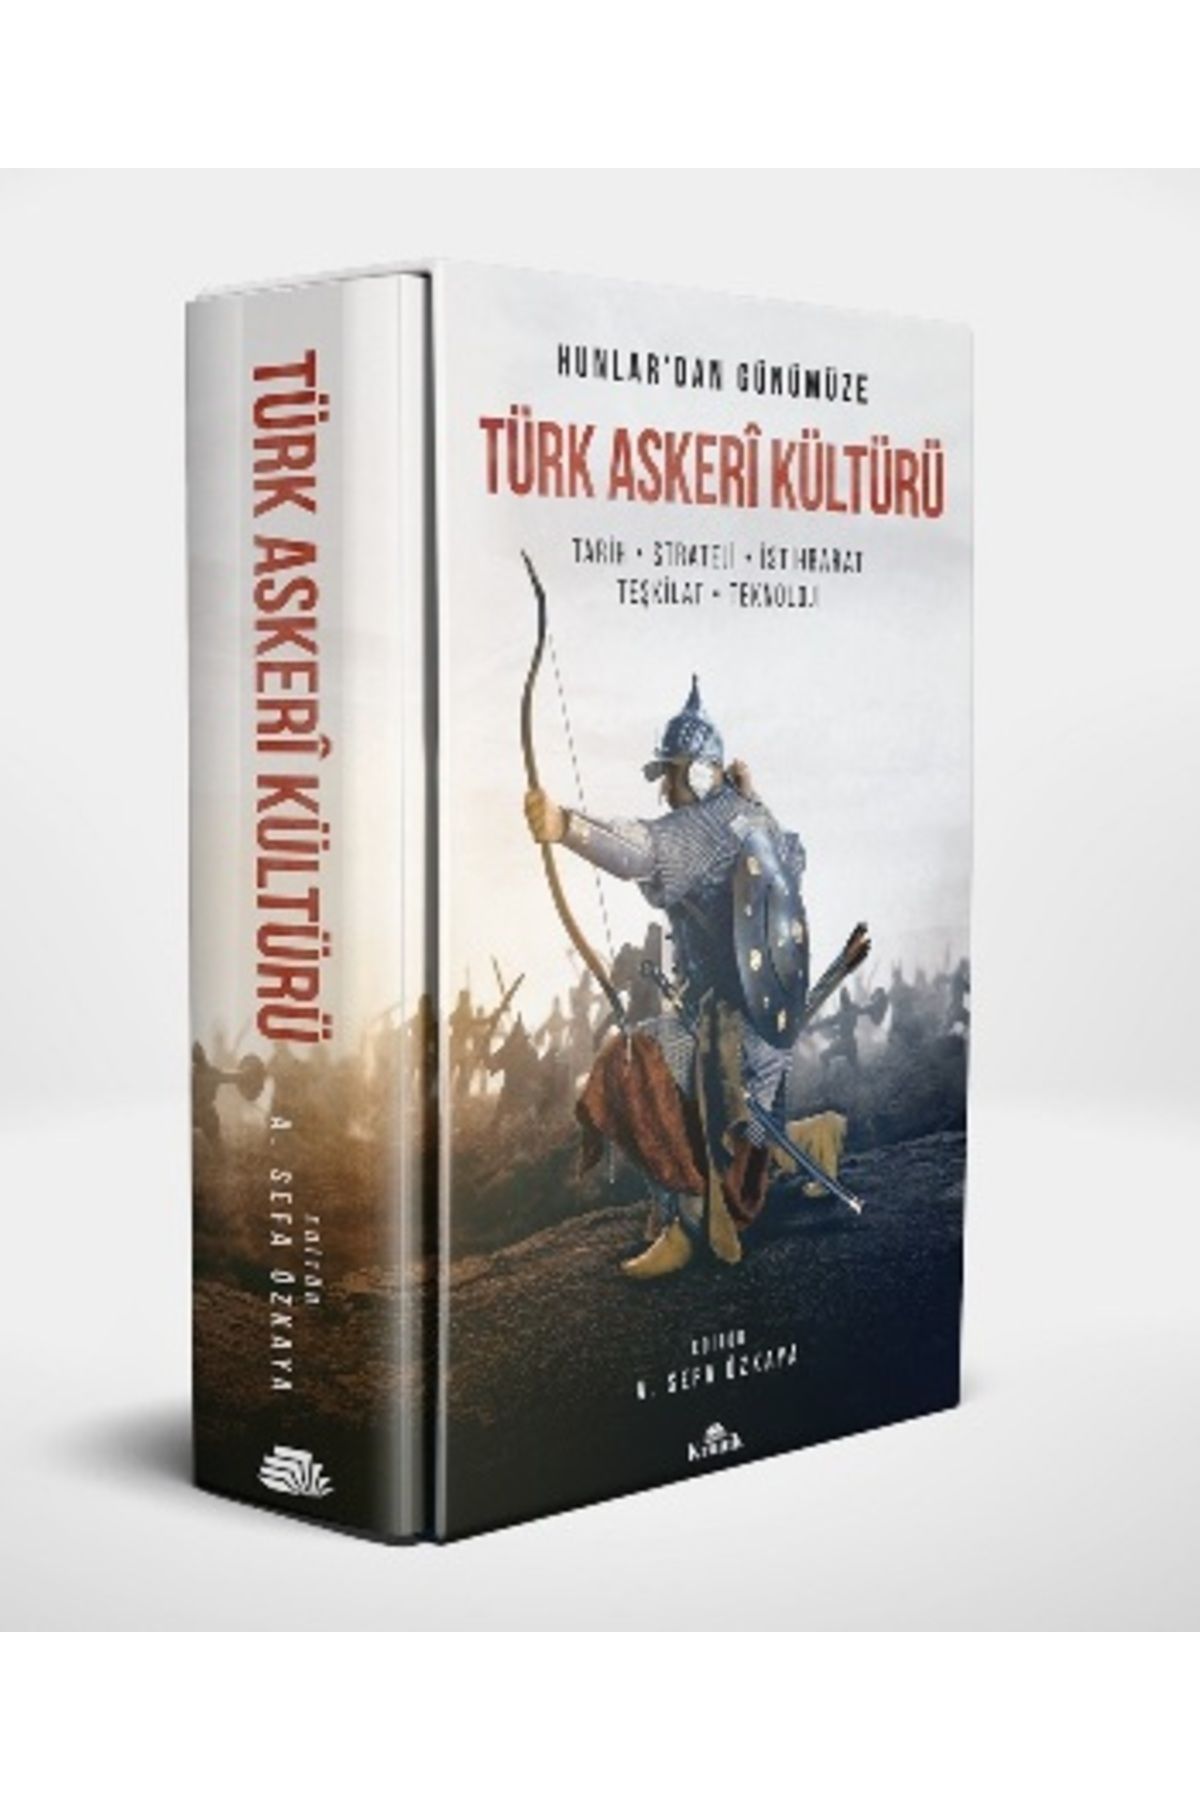 Kronik Kitap Hunlar'dan Günümüze Türk Askeri Kültürü (Kutulu)